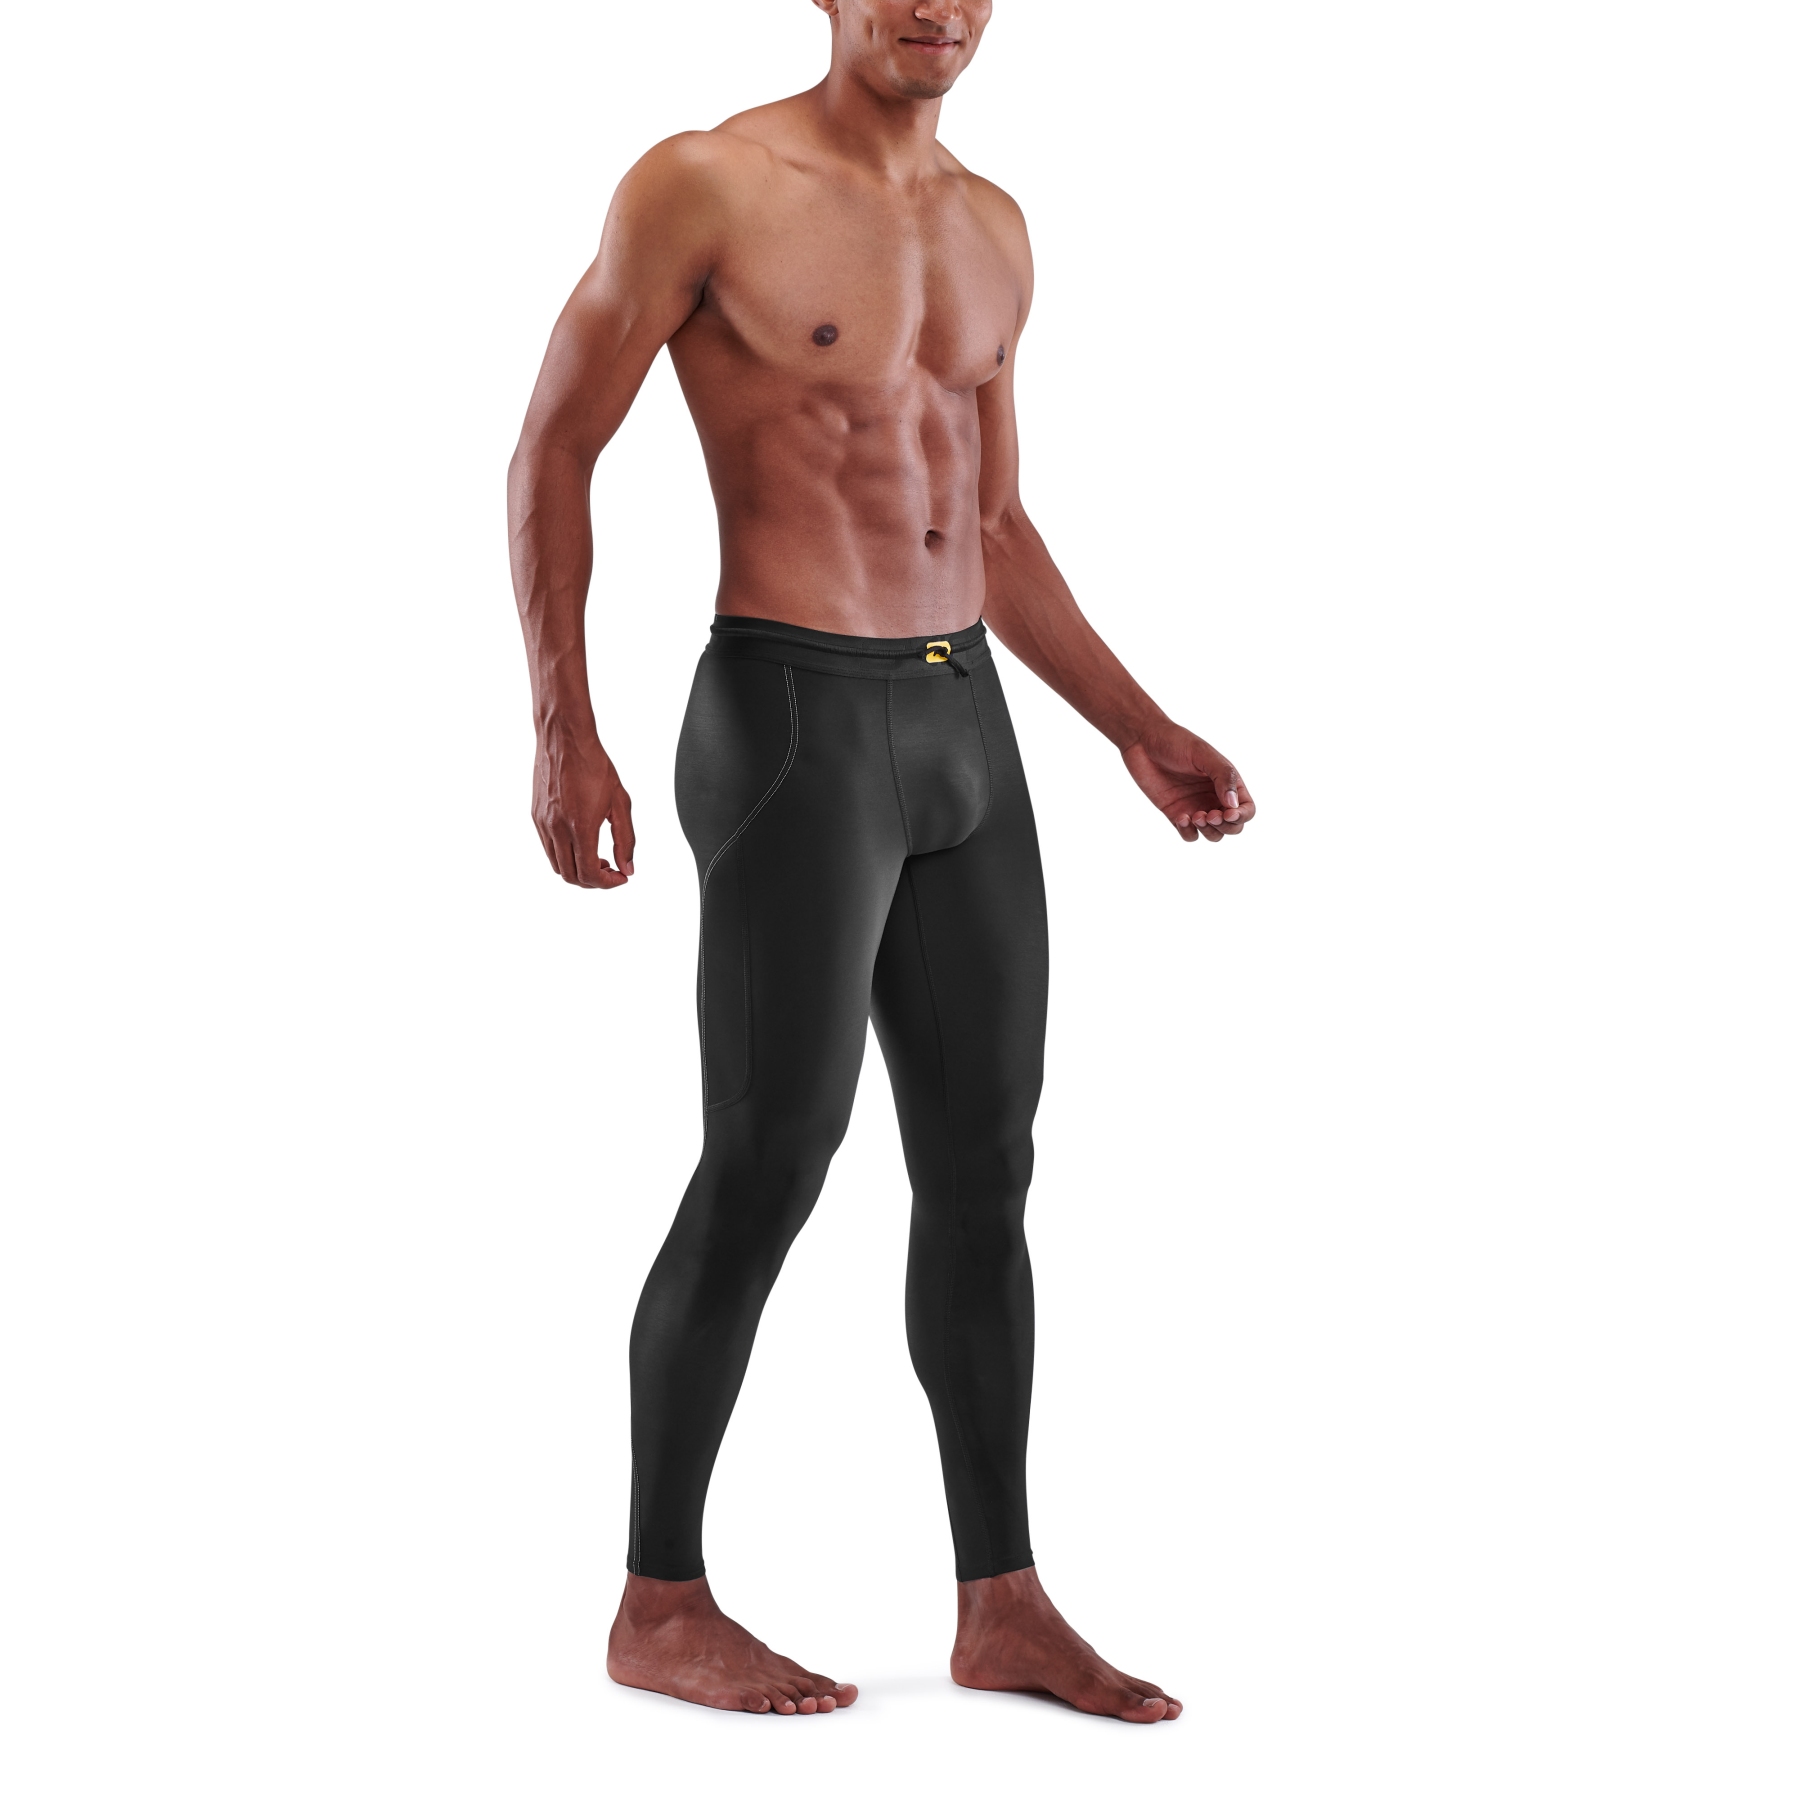 https://images.bike24.com/i/mb/29/d9/99/skins-compression-3-series-men-thermal-long-tights-black-4-892814.jpg